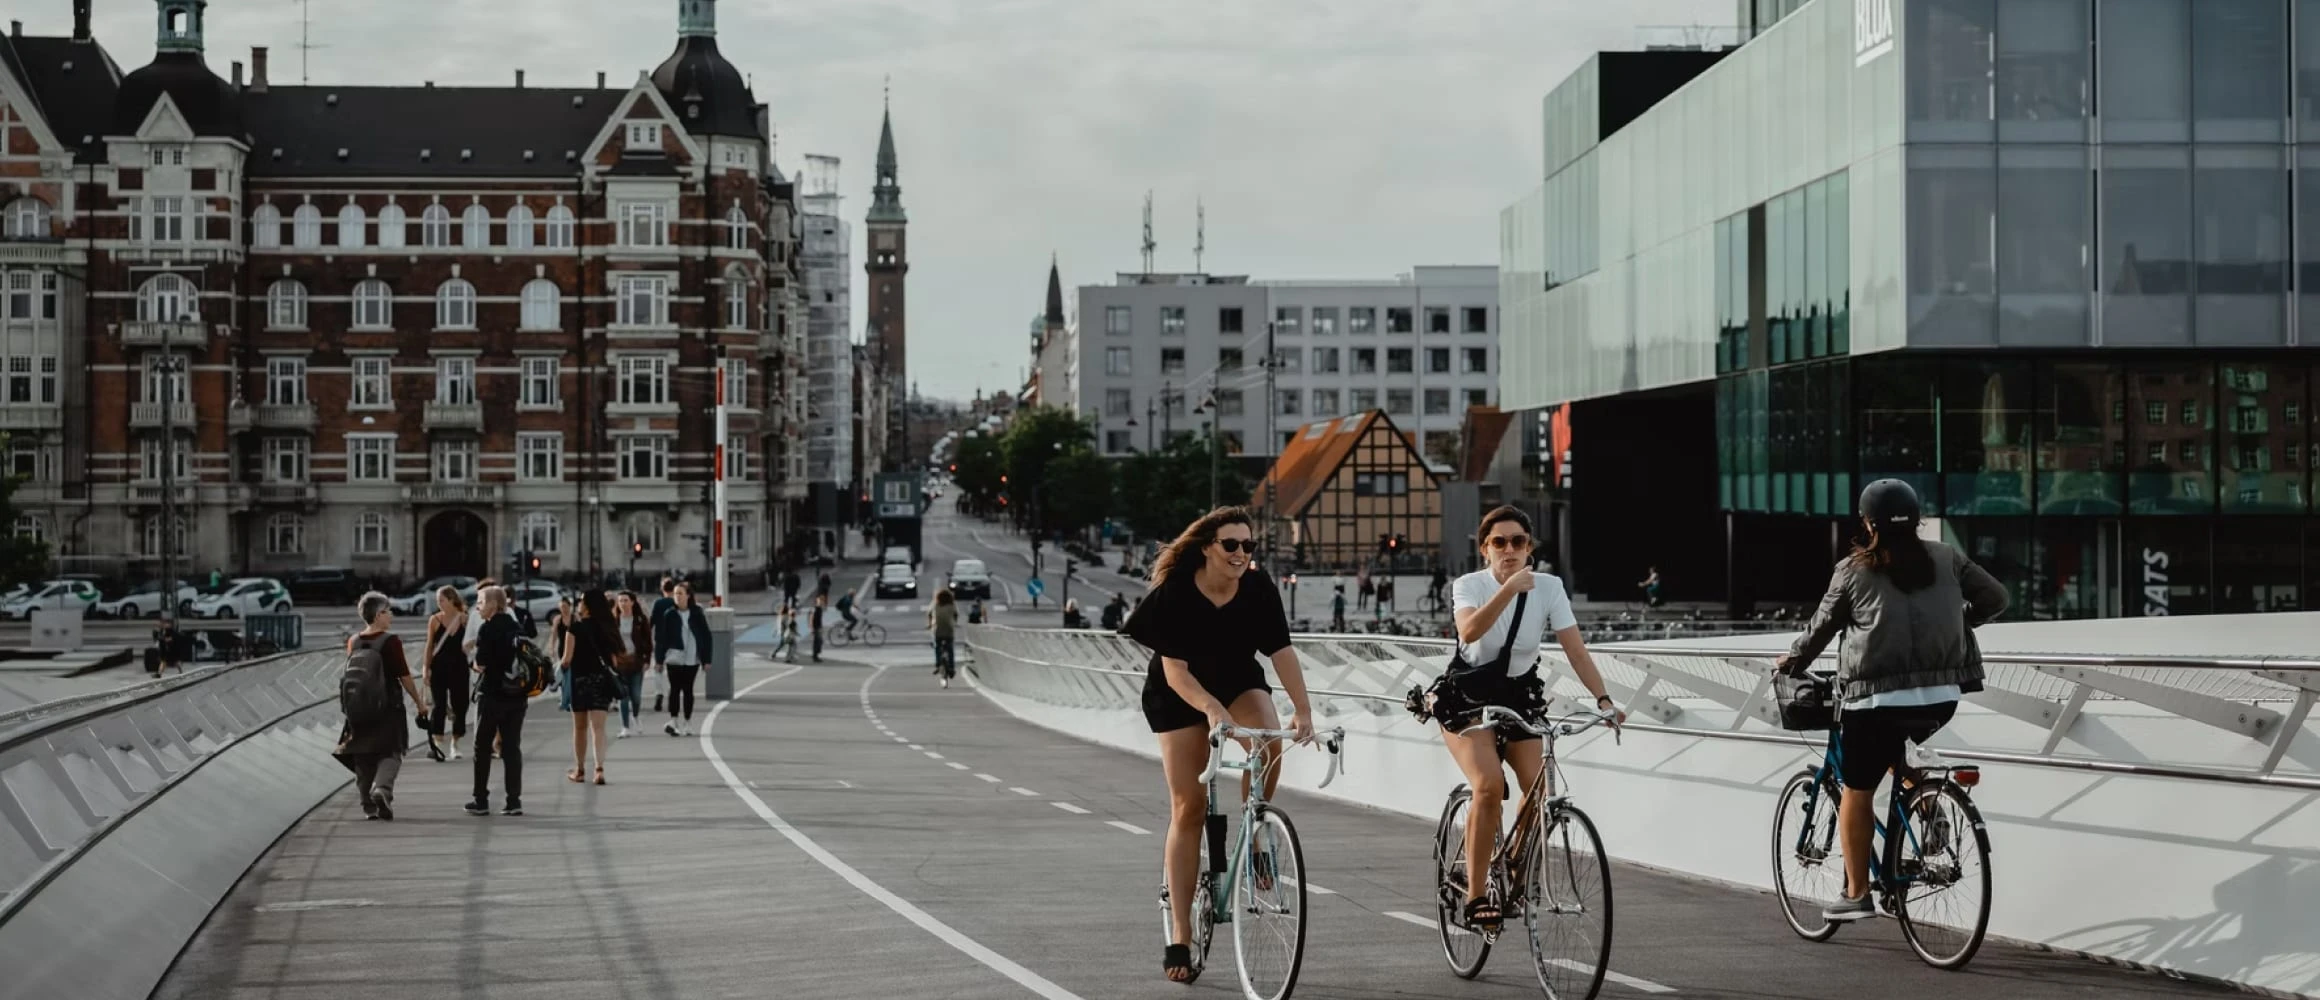 A couple riding bikes in Denmark